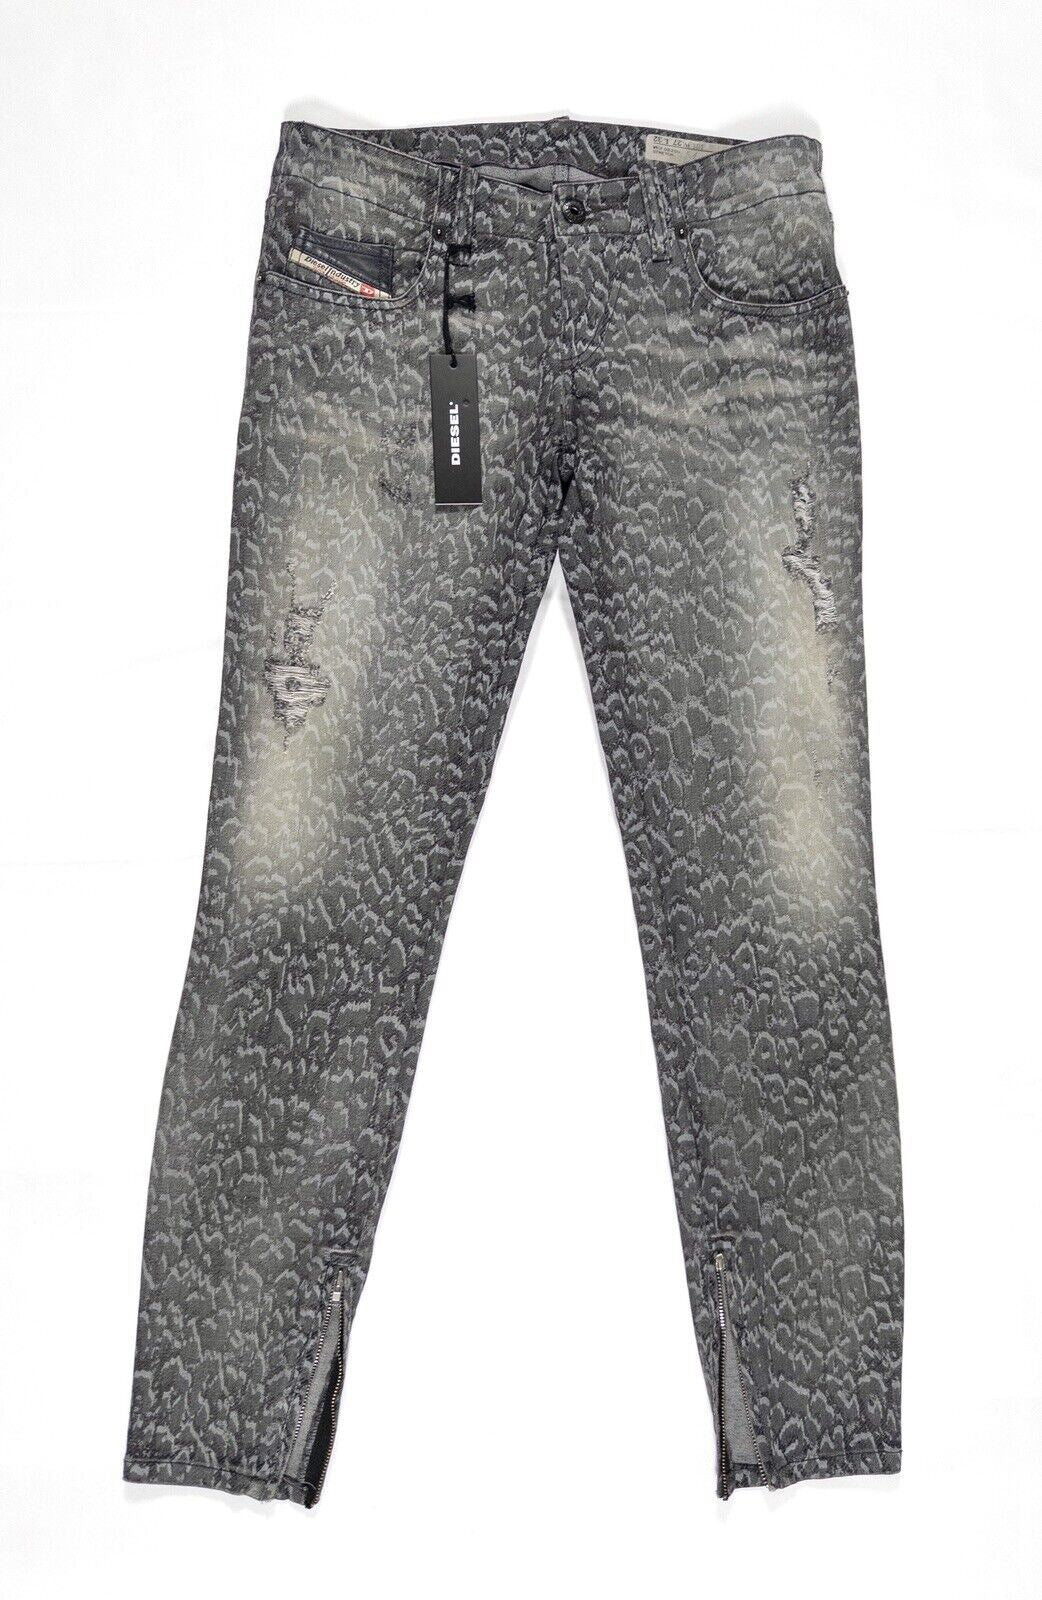 DIESEL Women's Animal Print Jeans Skinny Stretch Grey Size UK W27 L32